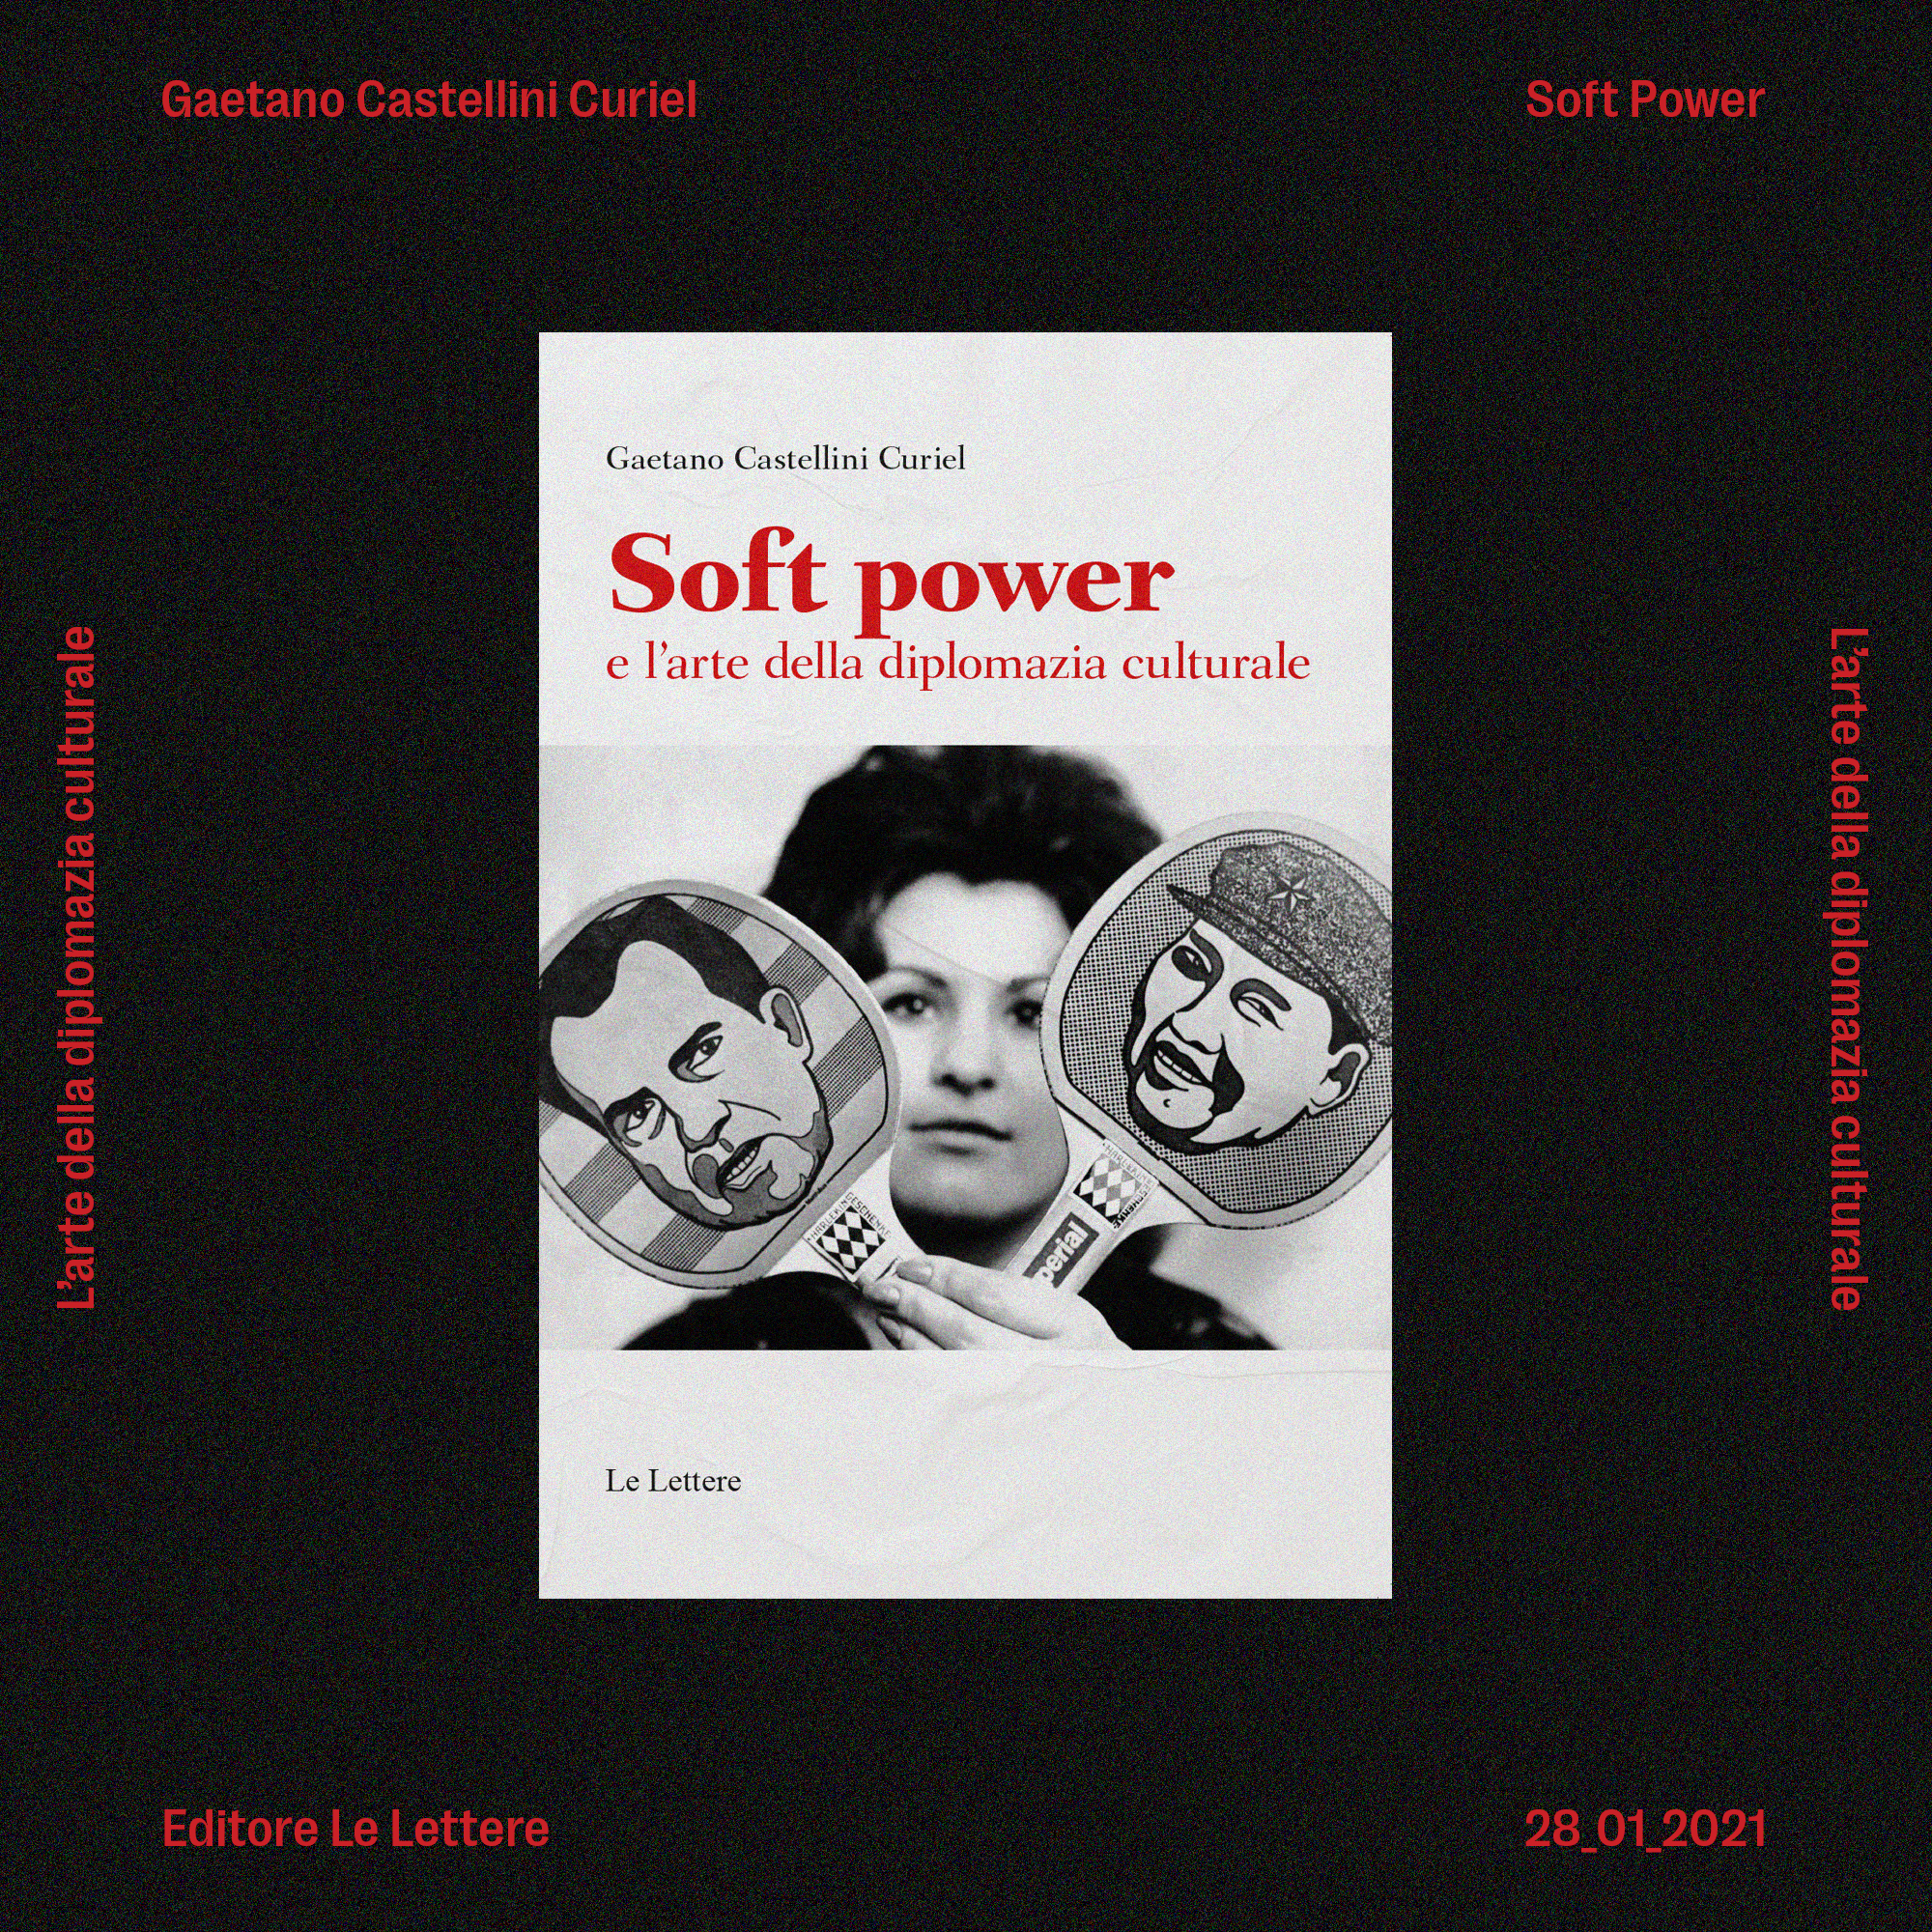 SOFT POWER e l’arte della diplomazia culturale Intervista a Gaetano Castellini Curiel